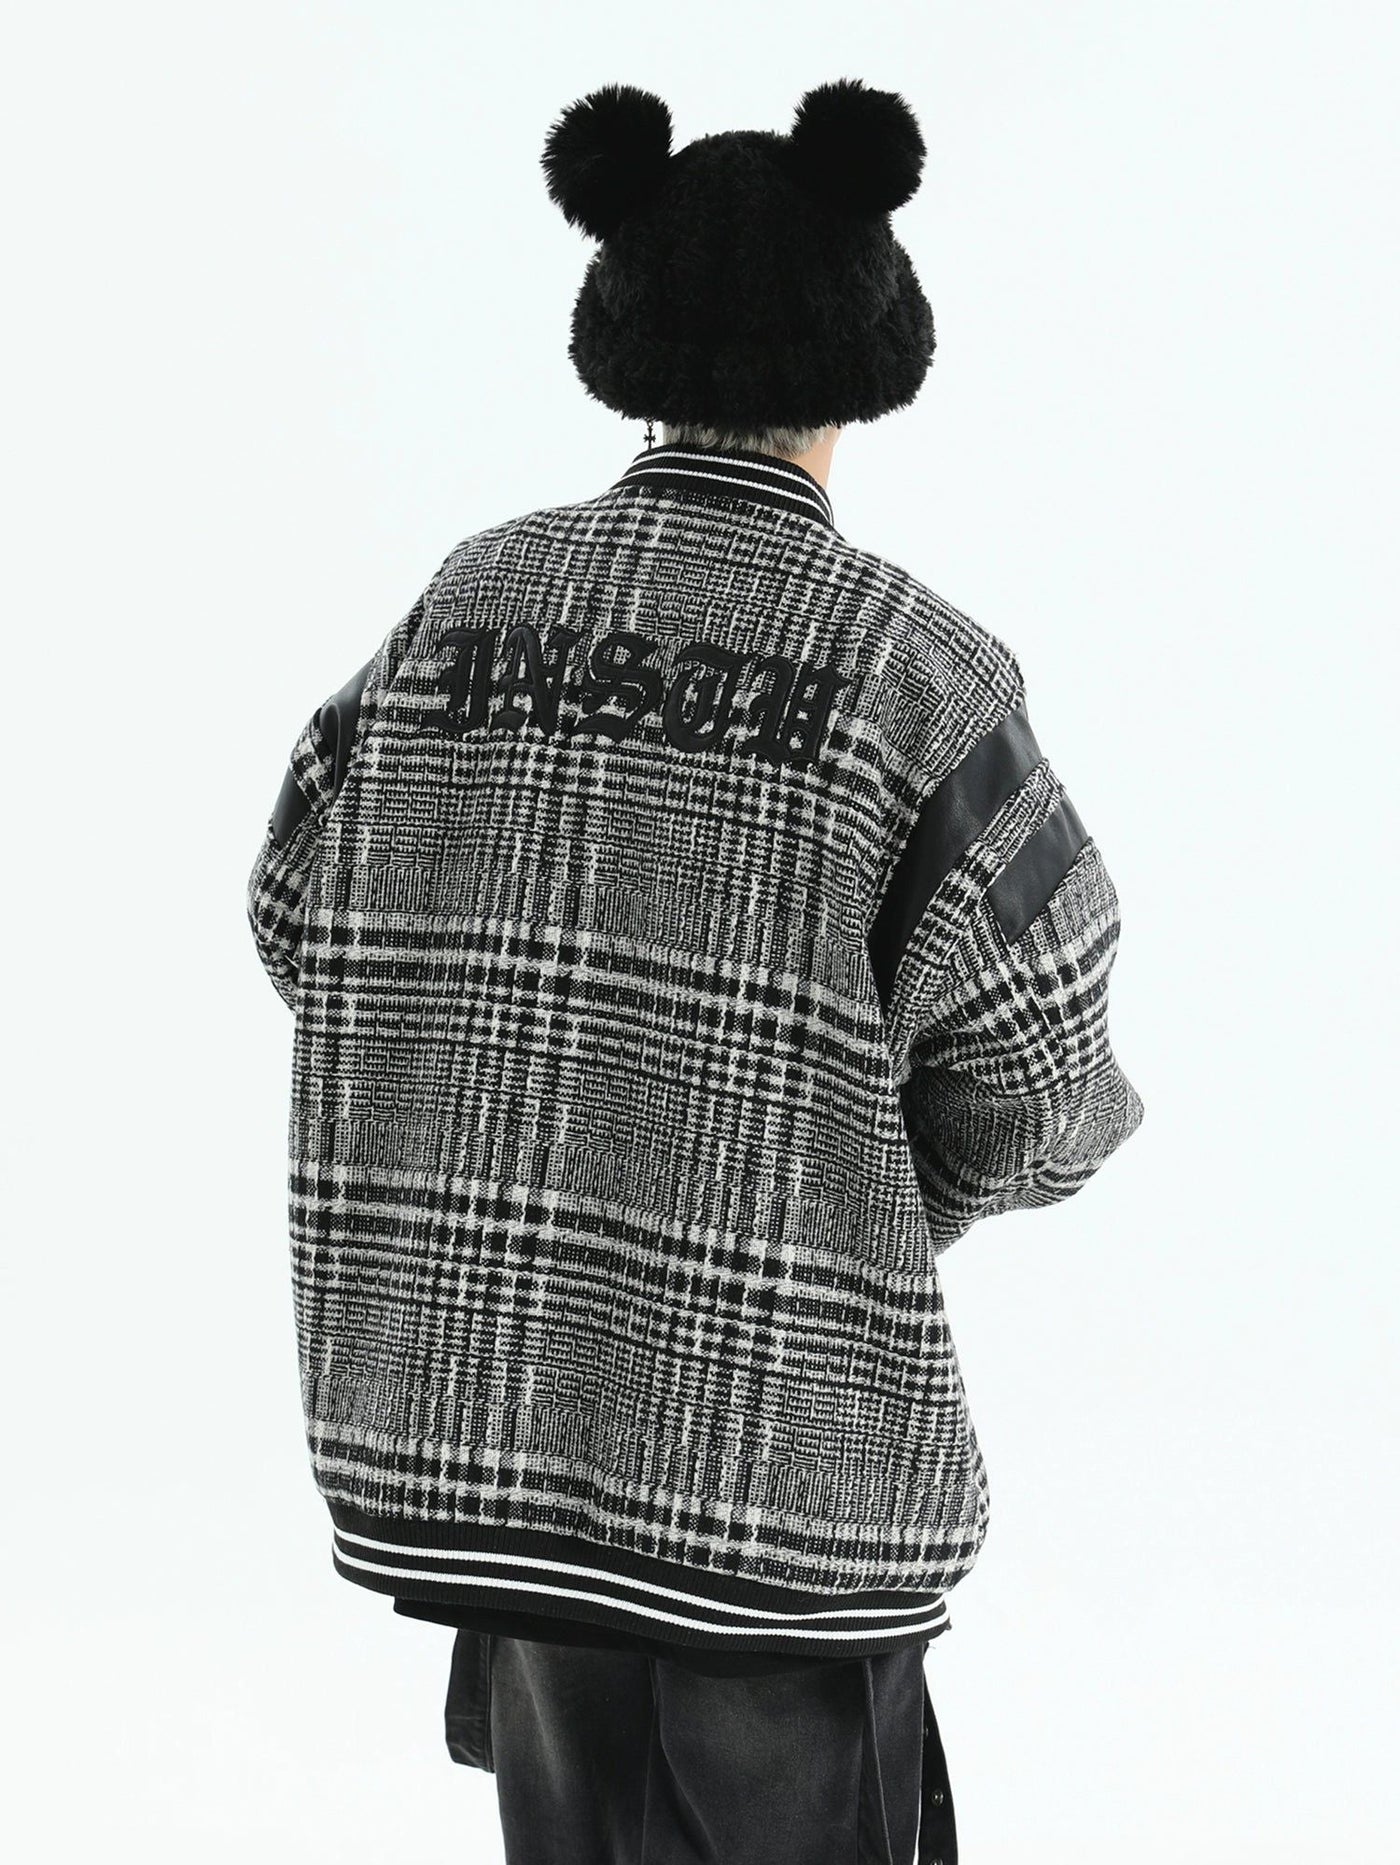 Oversized Fit Patterned Jacket Korean Street Fashion Jacket By INS Korea Shop Online at OH Vault